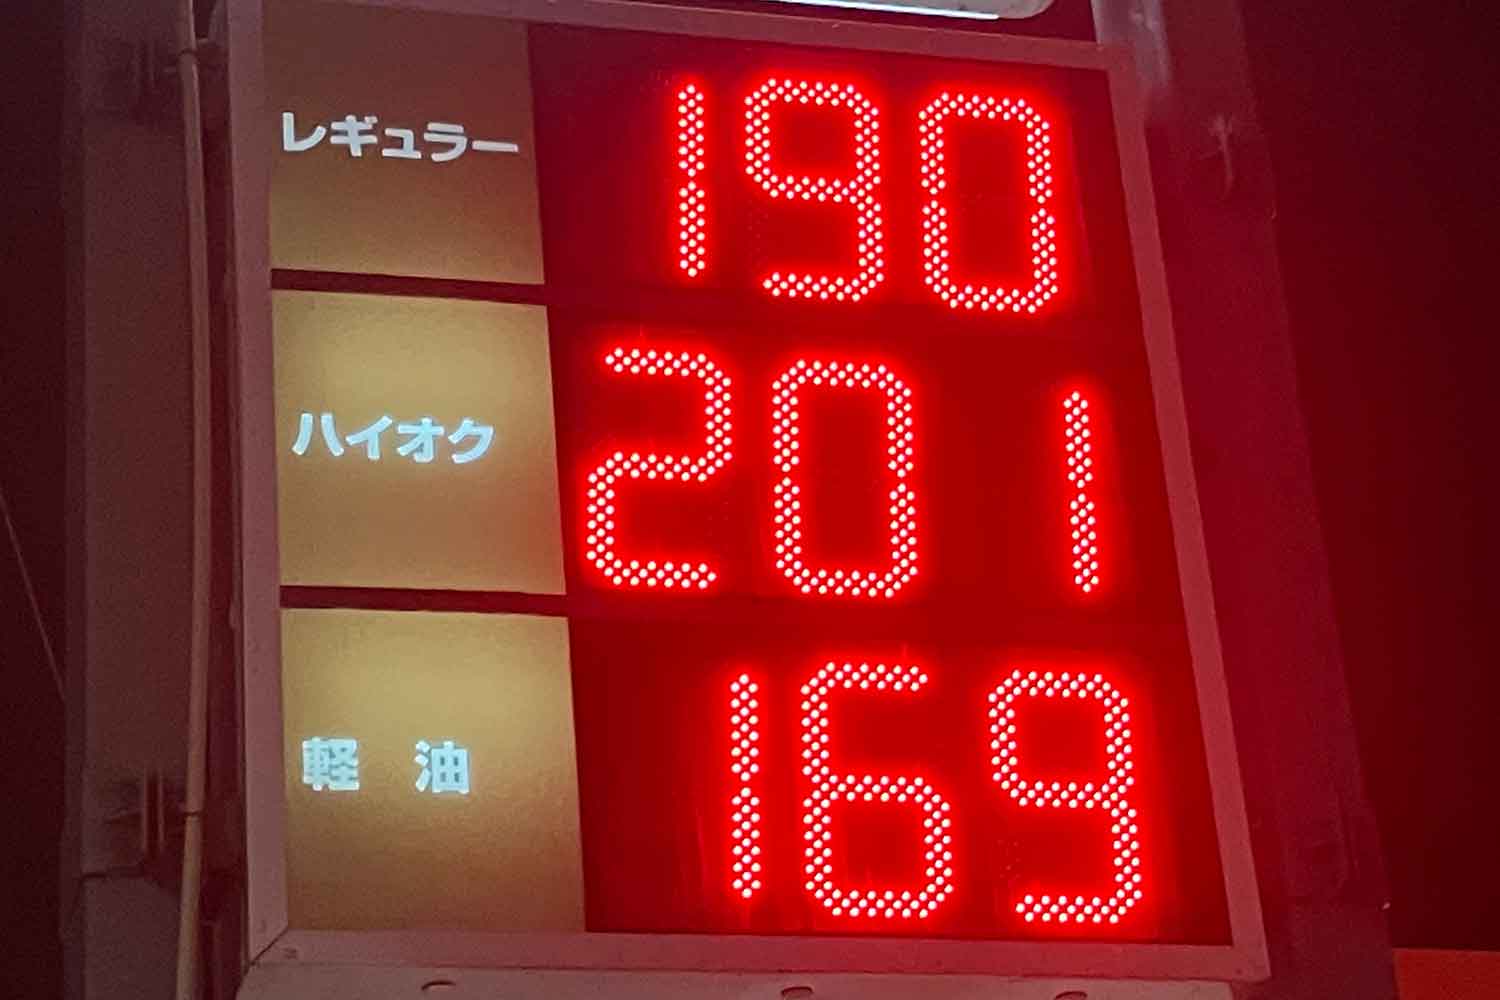 ガソリンスタンドの値段表示板